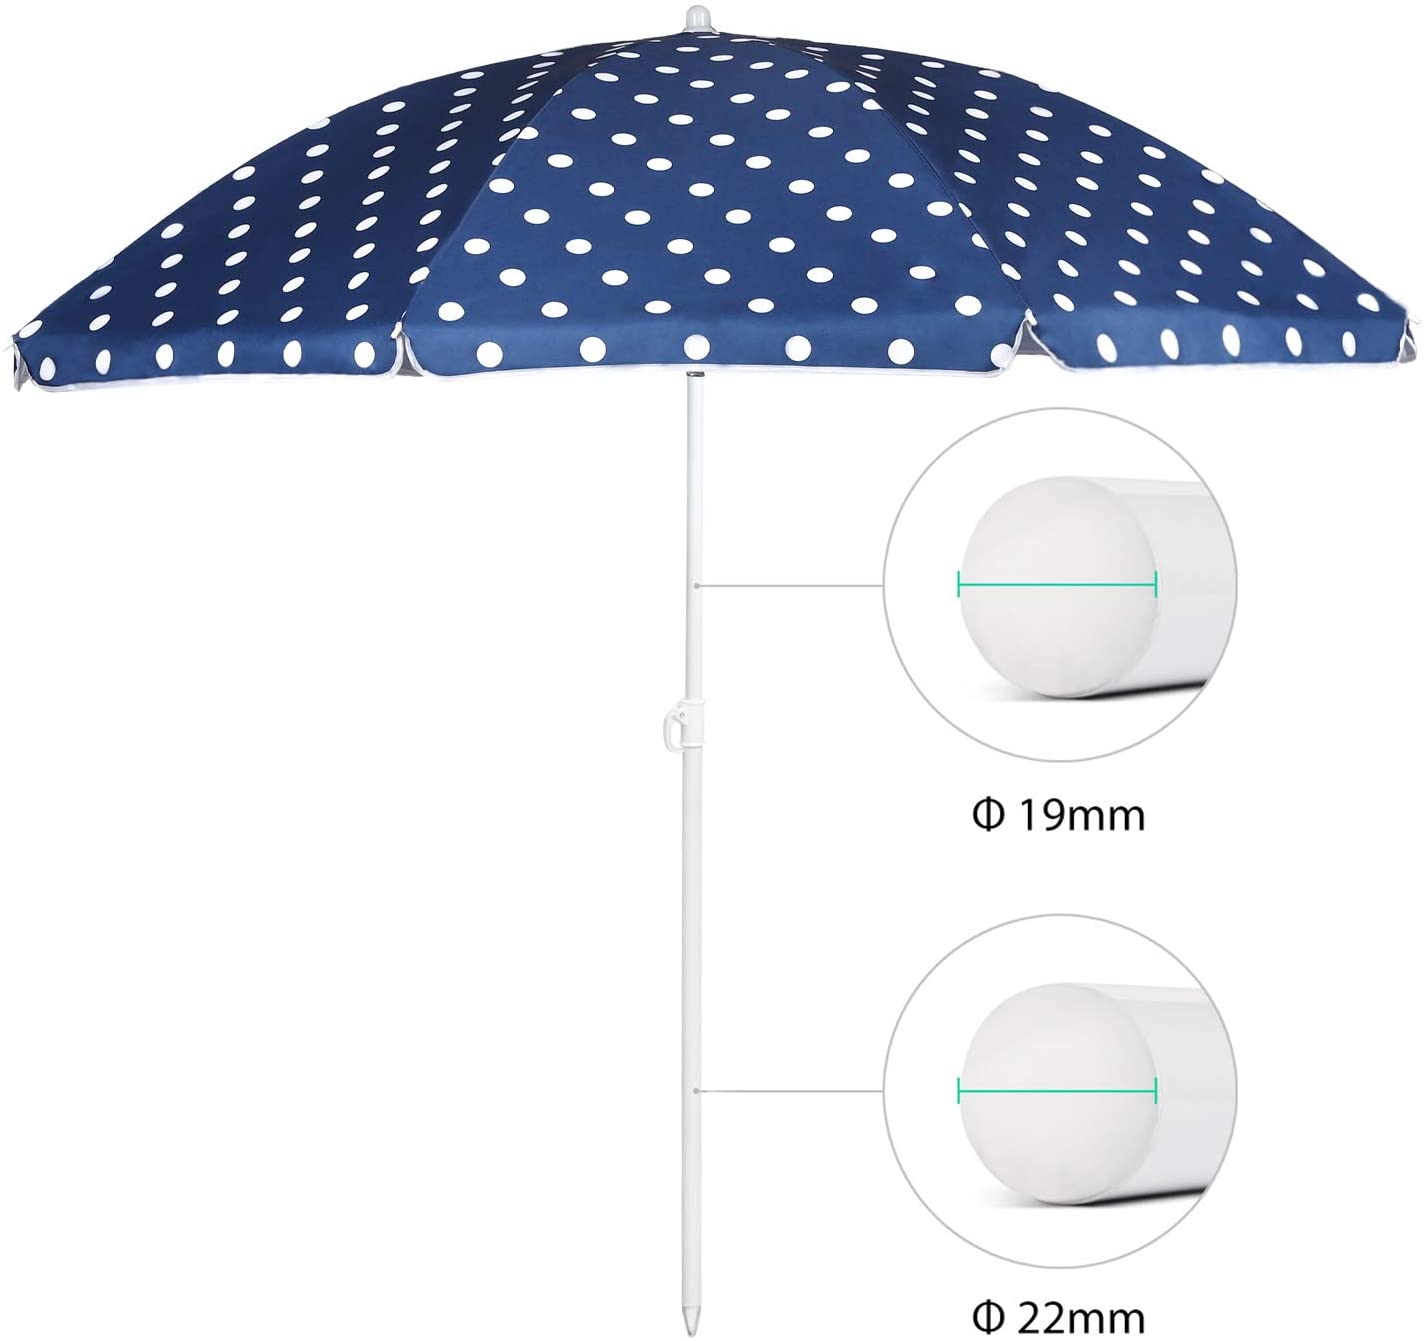 Sonnenschirm 160 cm blau weiß gepunktet - perfekt für den Sommer!